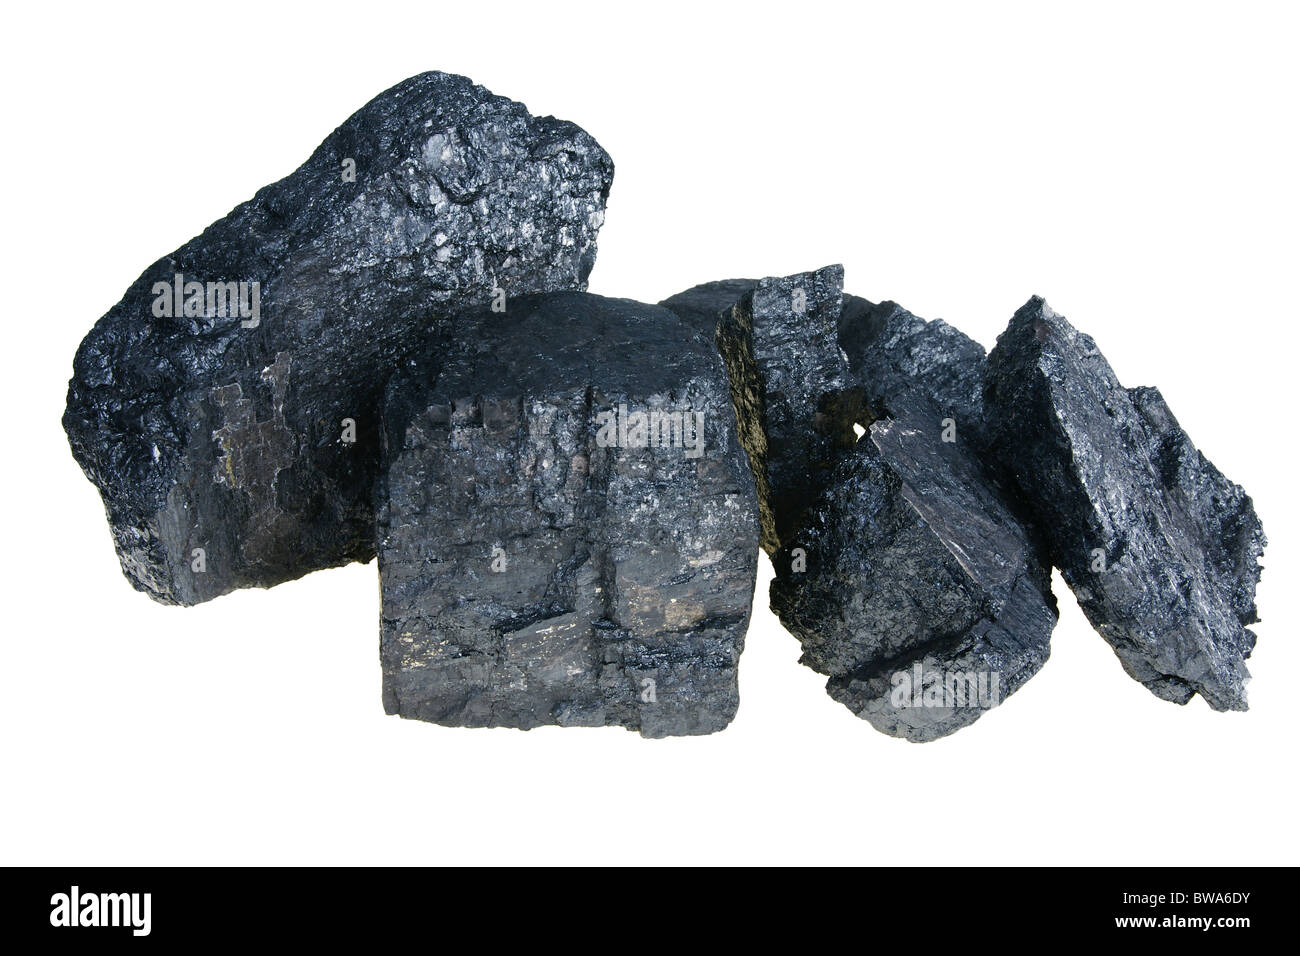 Morceau de charbon noir isolated on white Banque D'Images